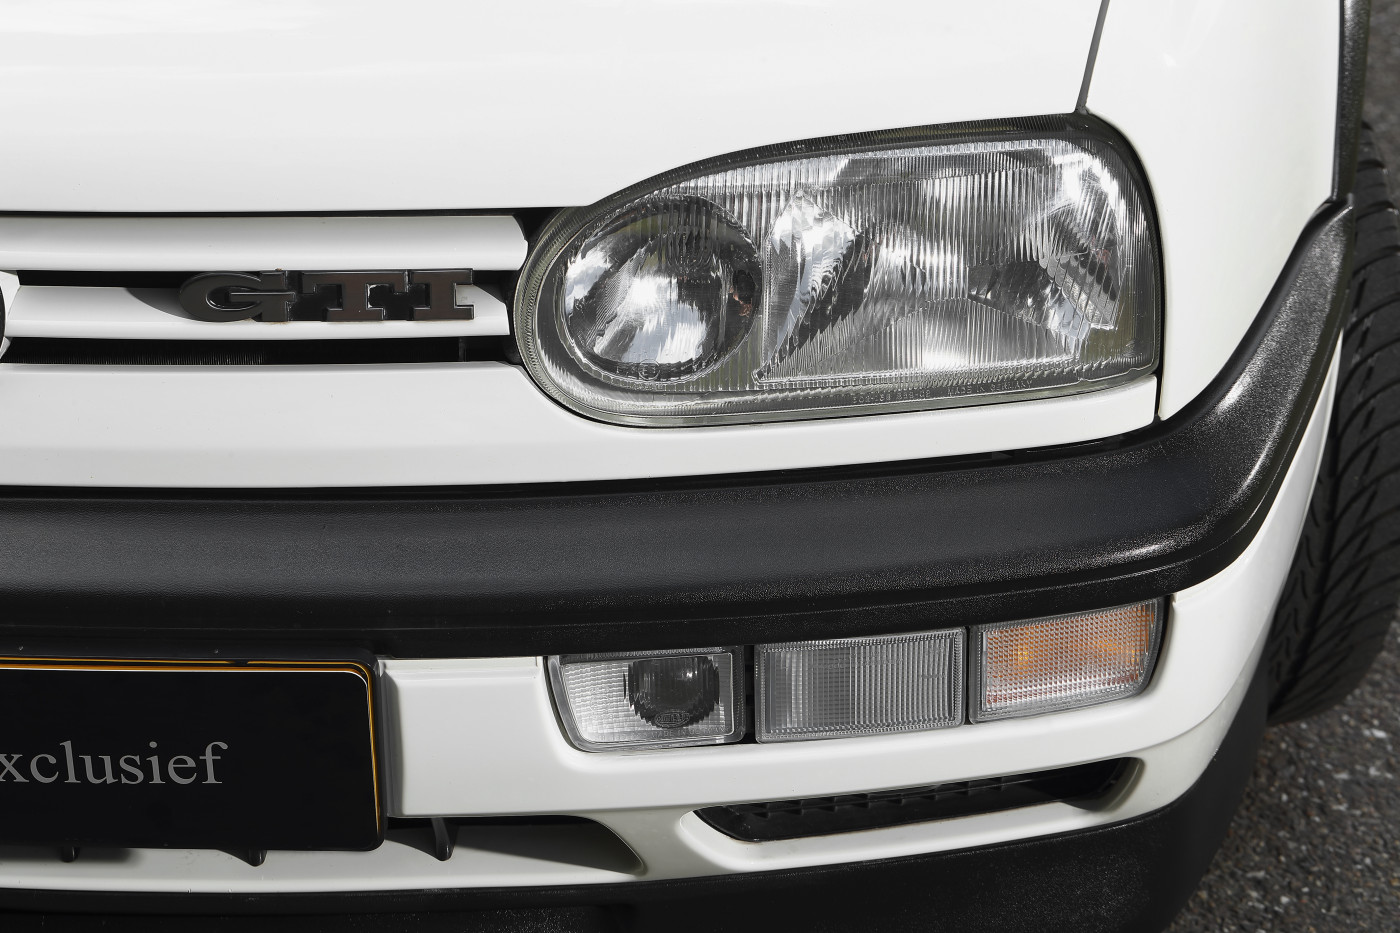 De Volkswagen Golf III en zijn vroege gebreken - Uit de Oude Doos 